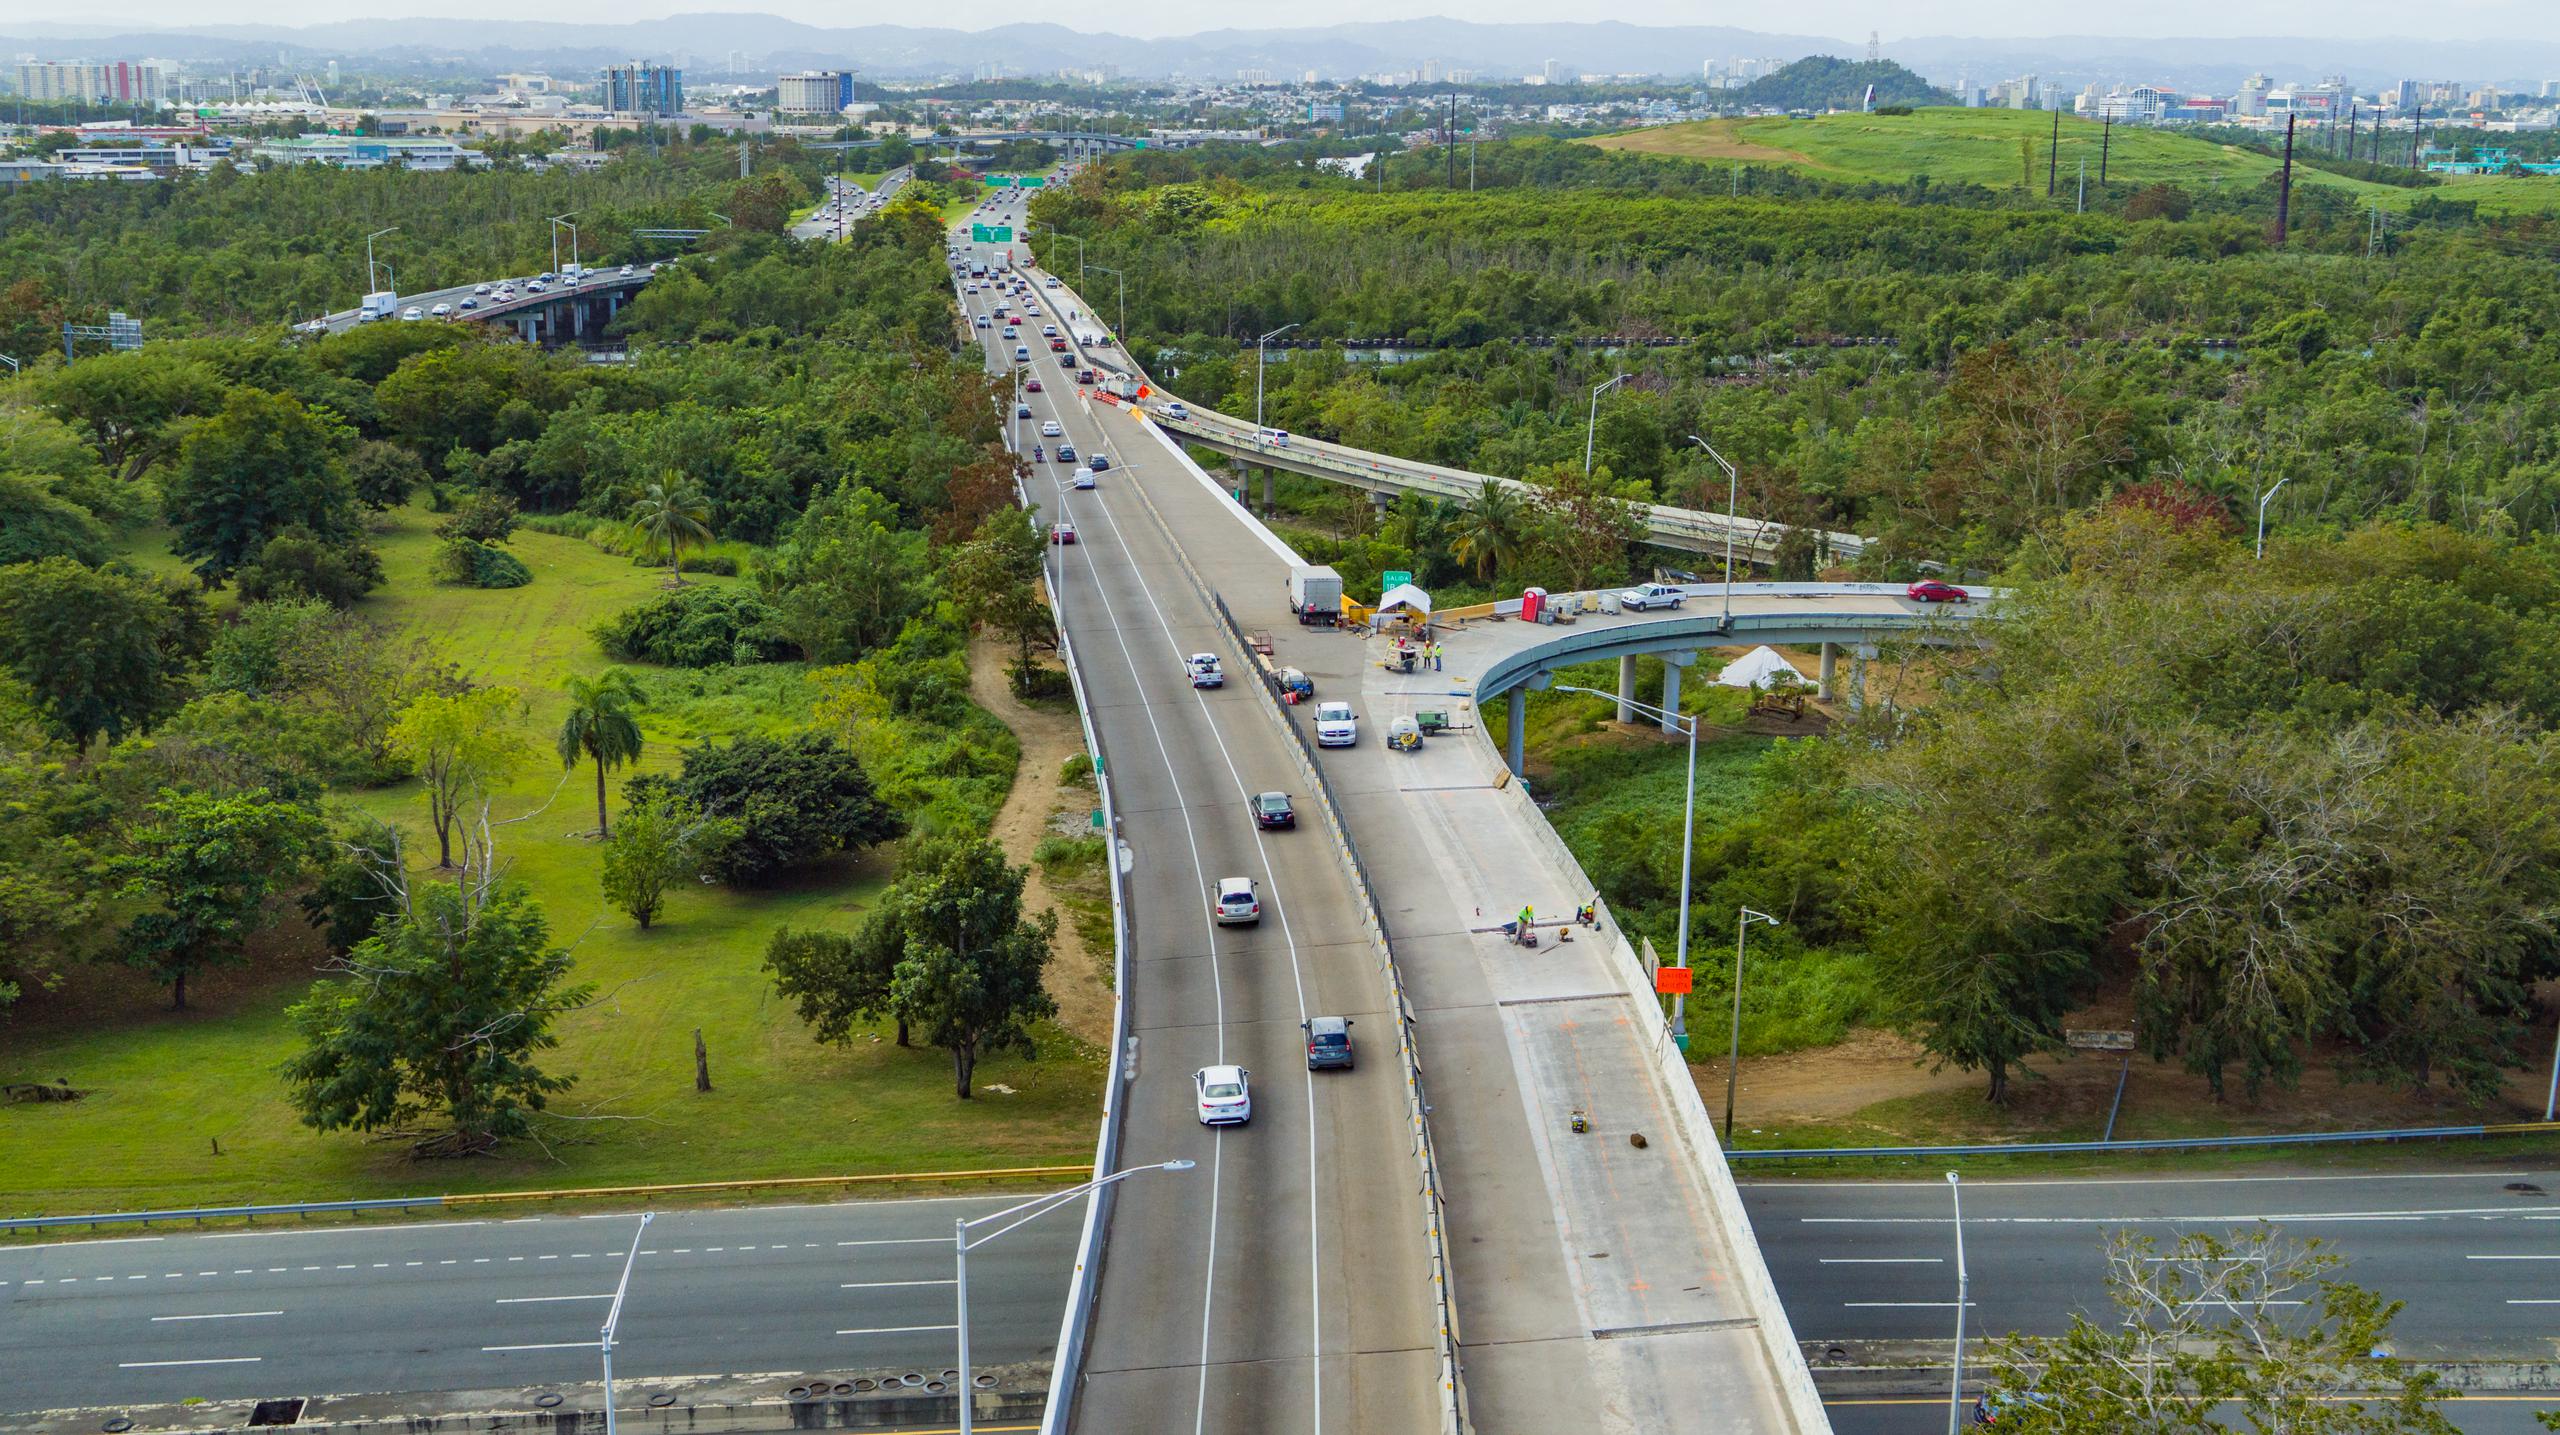 El puente sobre el Caño Martín Peña, a la salida del túnel de Minillas en dirección a Bayamón, es uno de los puntos más transitados en todo Puerto Rico, con un tráfico promedio de más de 100,000 vehículos diarios.